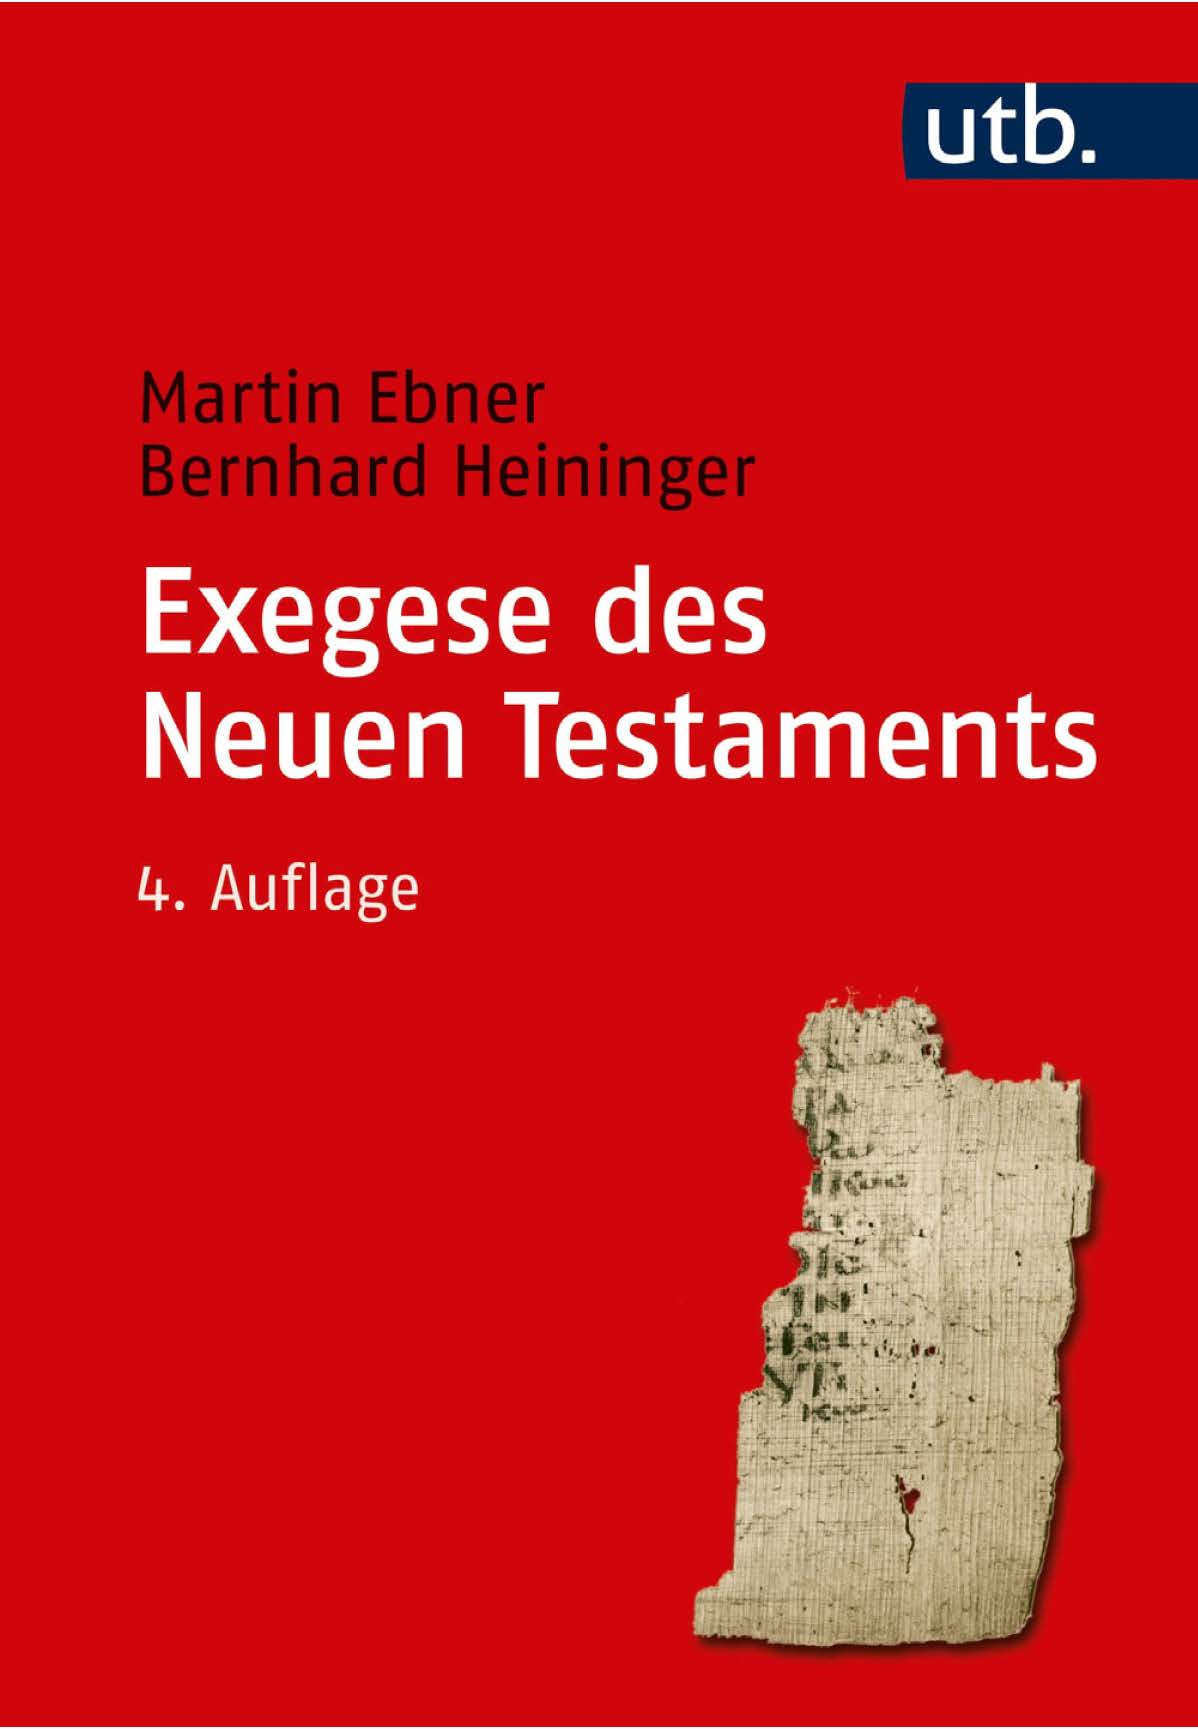 Cover_NA_2677_EbnerHeininger_Exegese des Neuen Testaments_4. Aufl.jpg